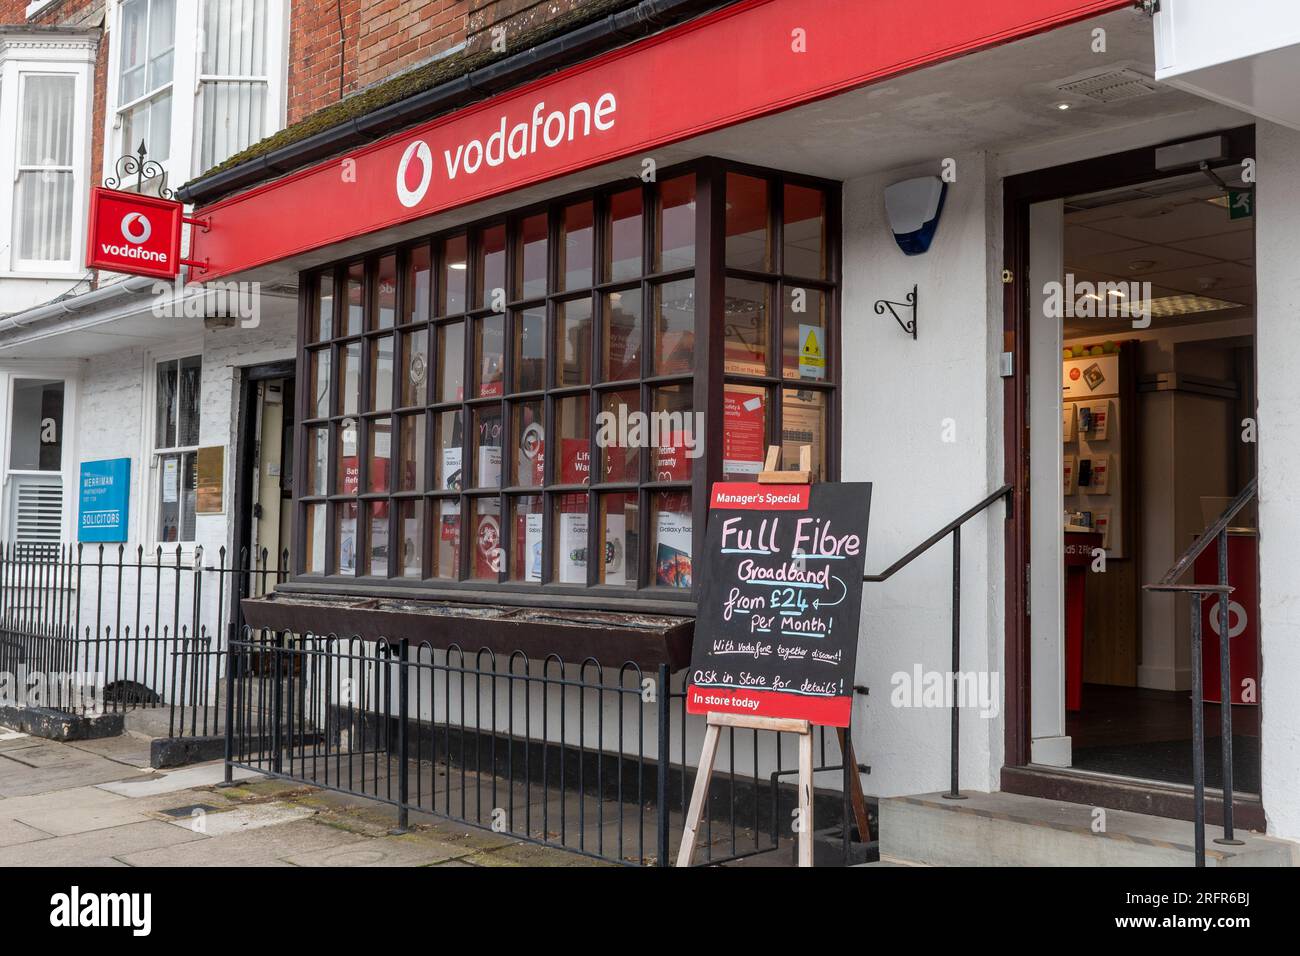 Vodafone vetrina, negozio che vende offerte per telefoni cellulari, Inghilterra, Regno Unito Foto Stock